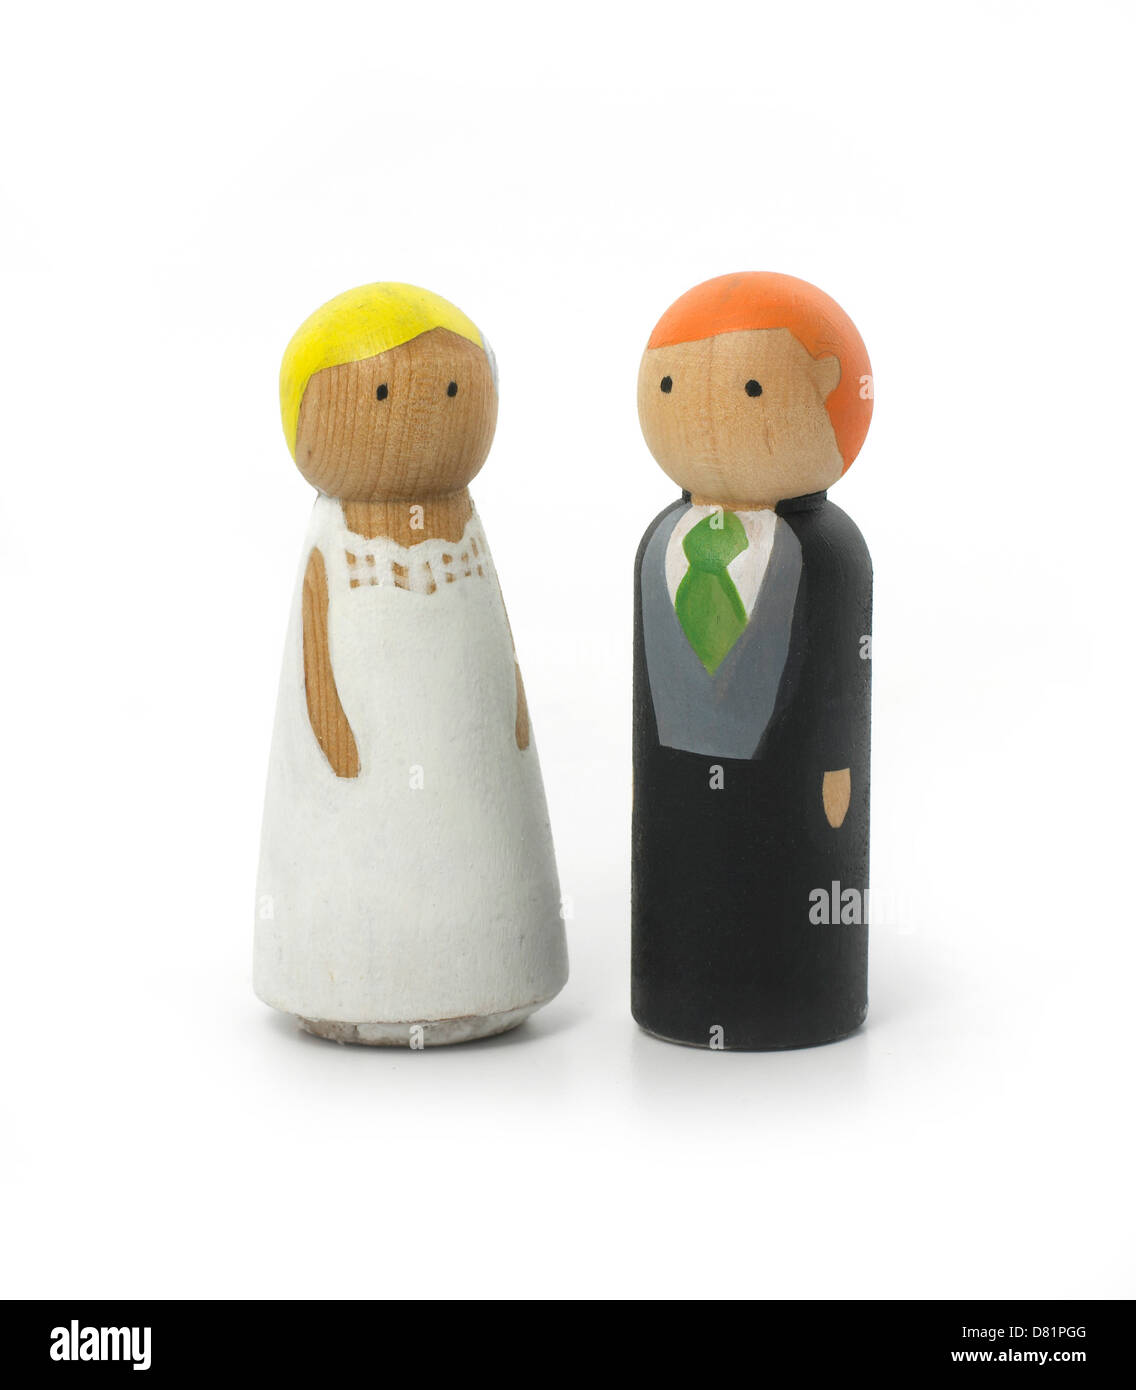 Figurines de mariage en bois coupé fond blanc Banque D'Images